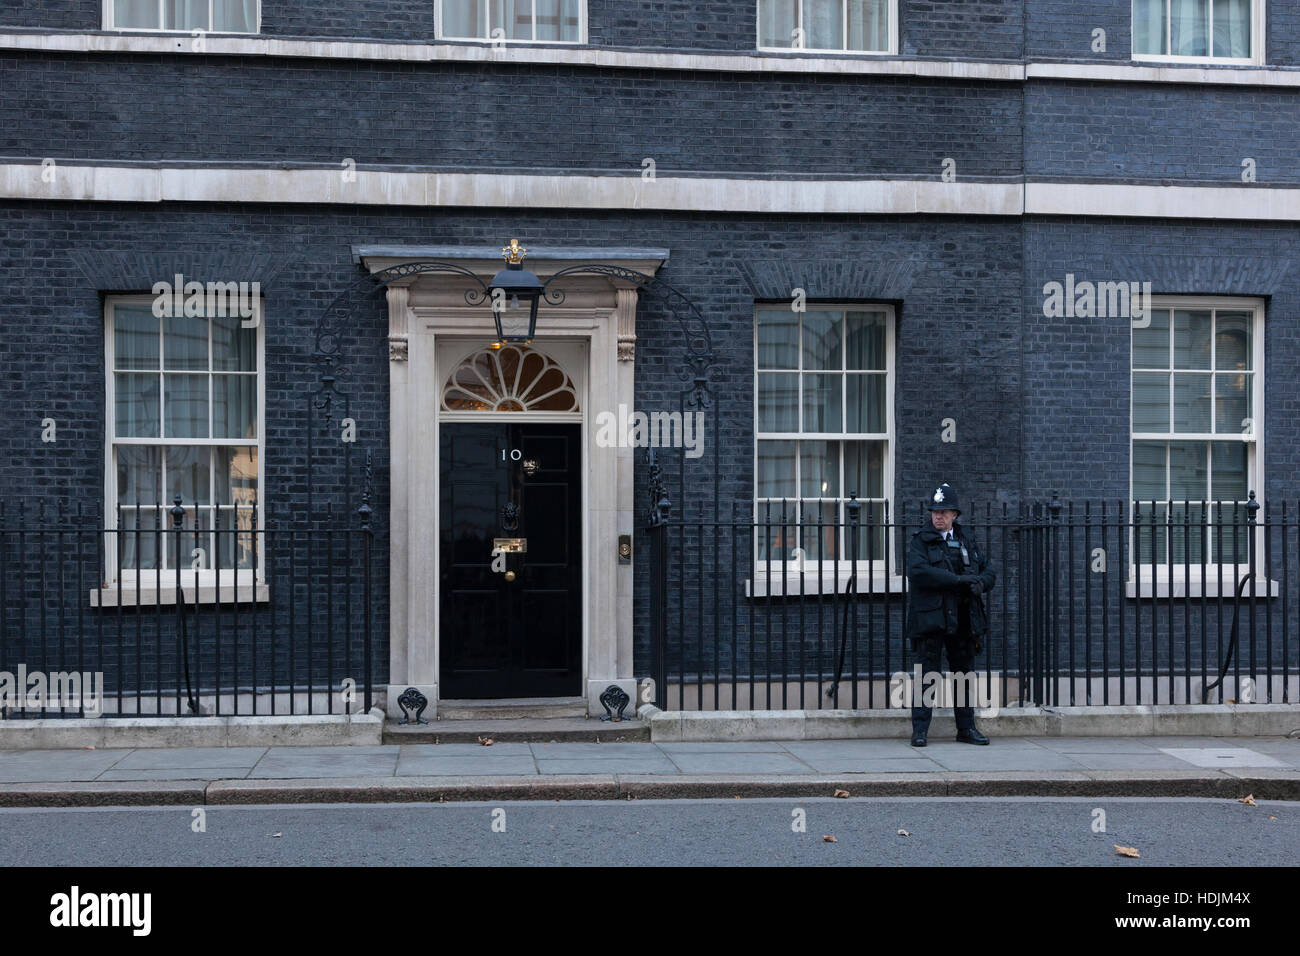 London, 28. November 2016. Eine Wache vor 10 Downing Street in London, die Residenz des Premierministers des Vereinigten Königreichs. Stockfoto